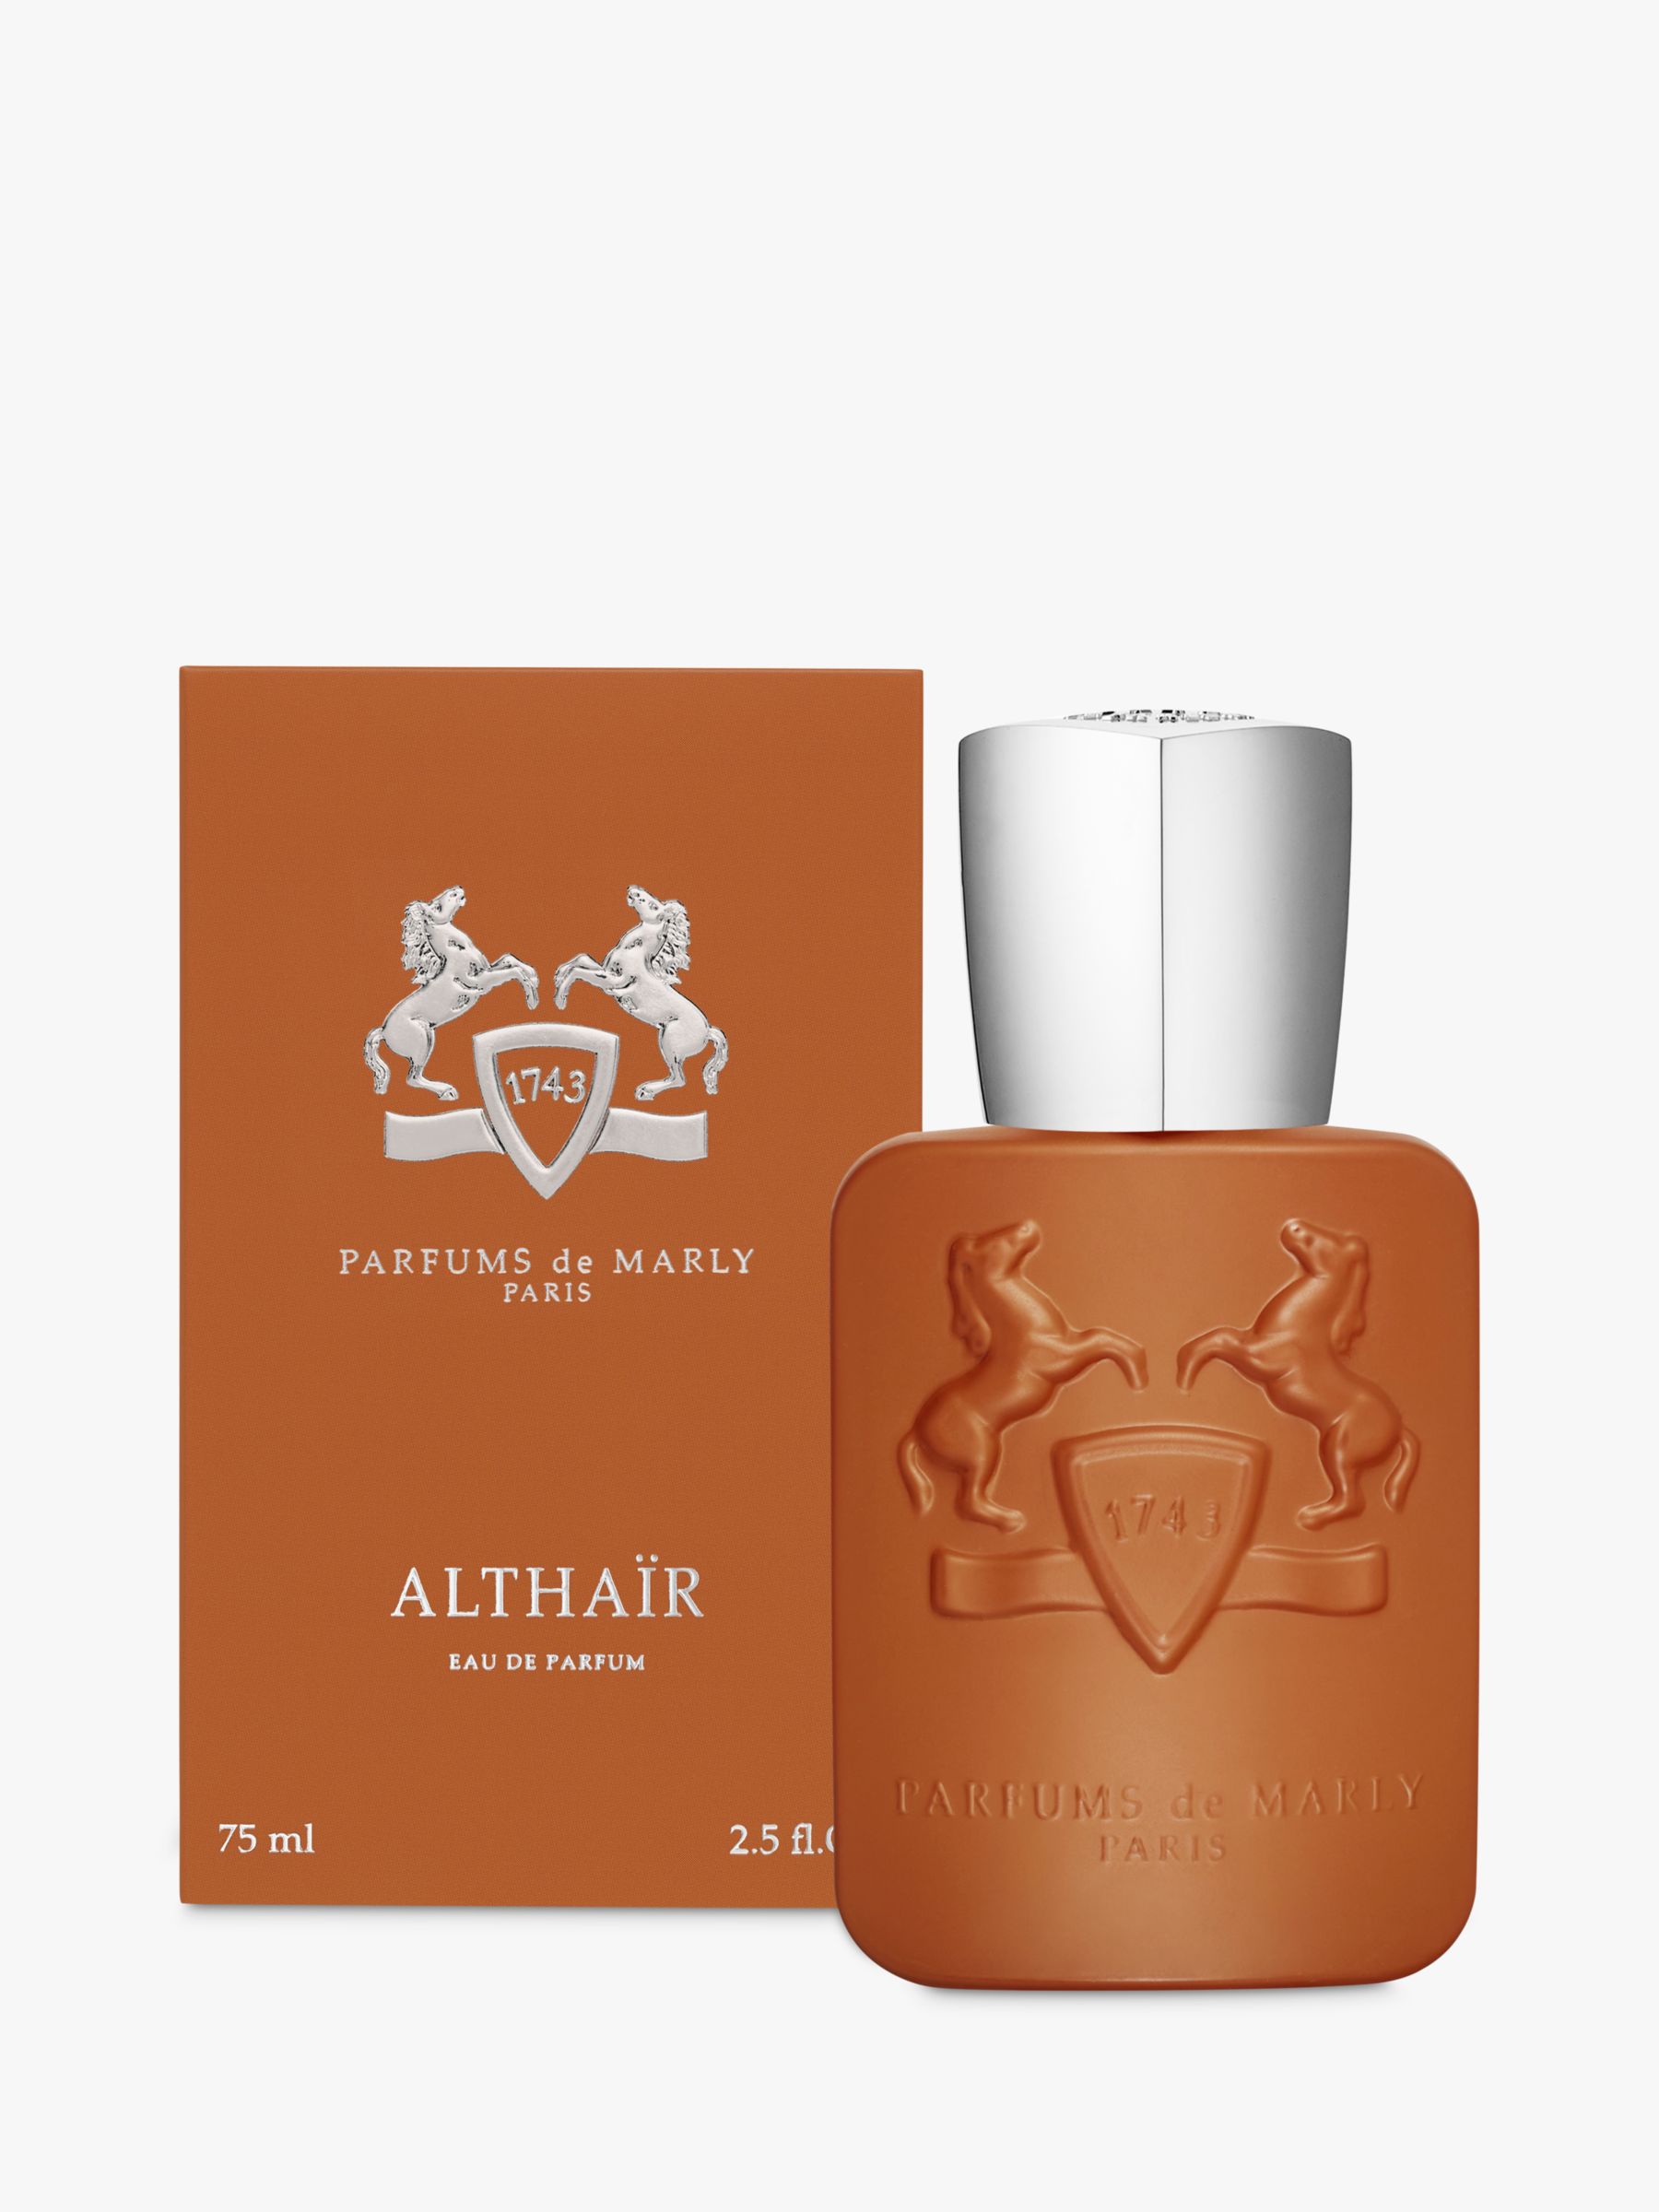 Parfums de Marly Althaïr Eau de Parfum, 75ml 1